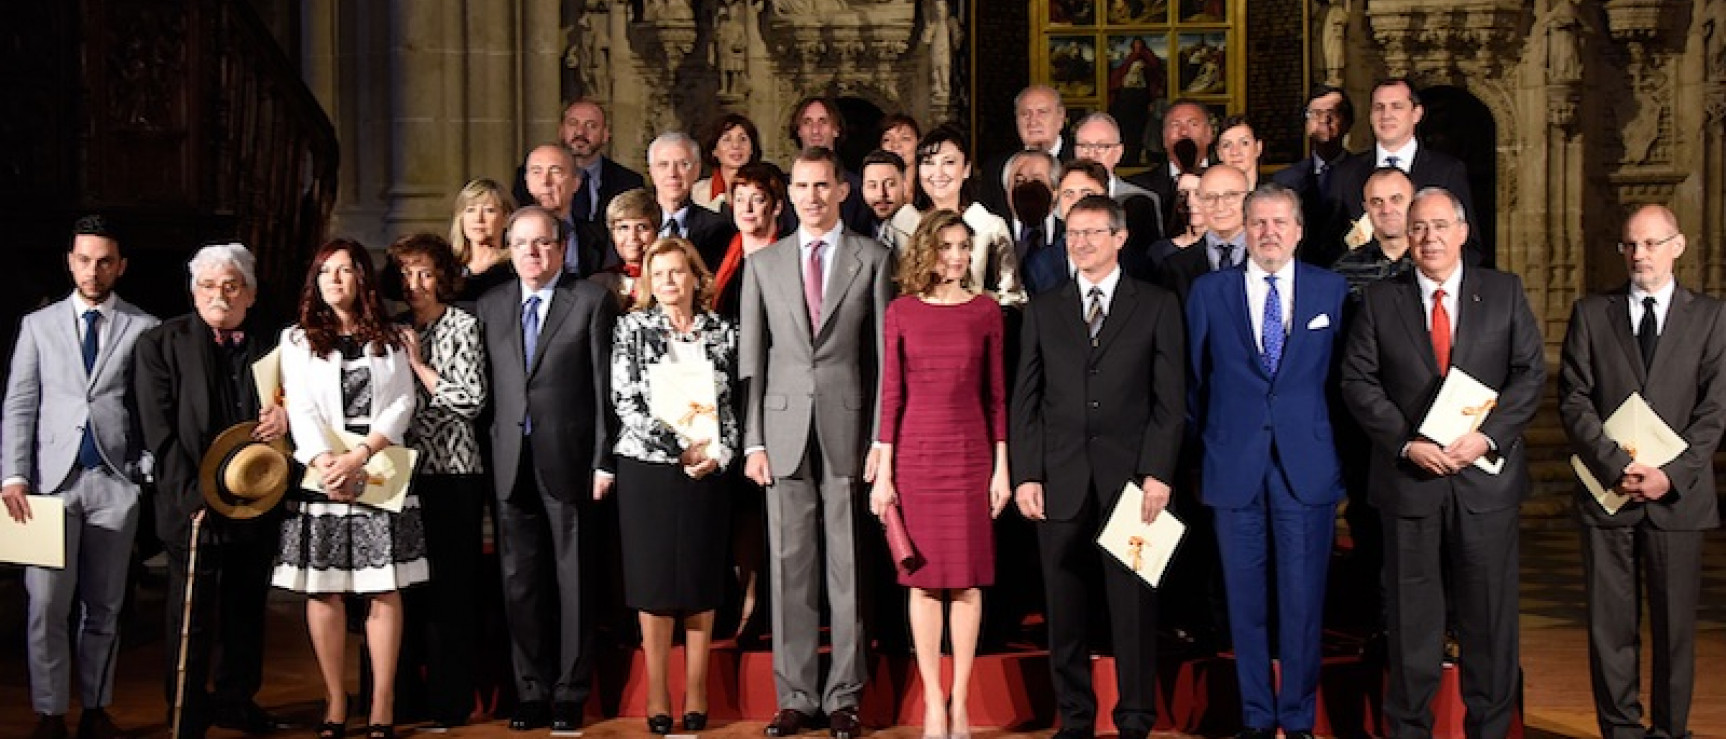 Los galardonados con los Premios Nacionales de Cultura posan junto a los reyes de España. Foto: Ministerio de Cultura.